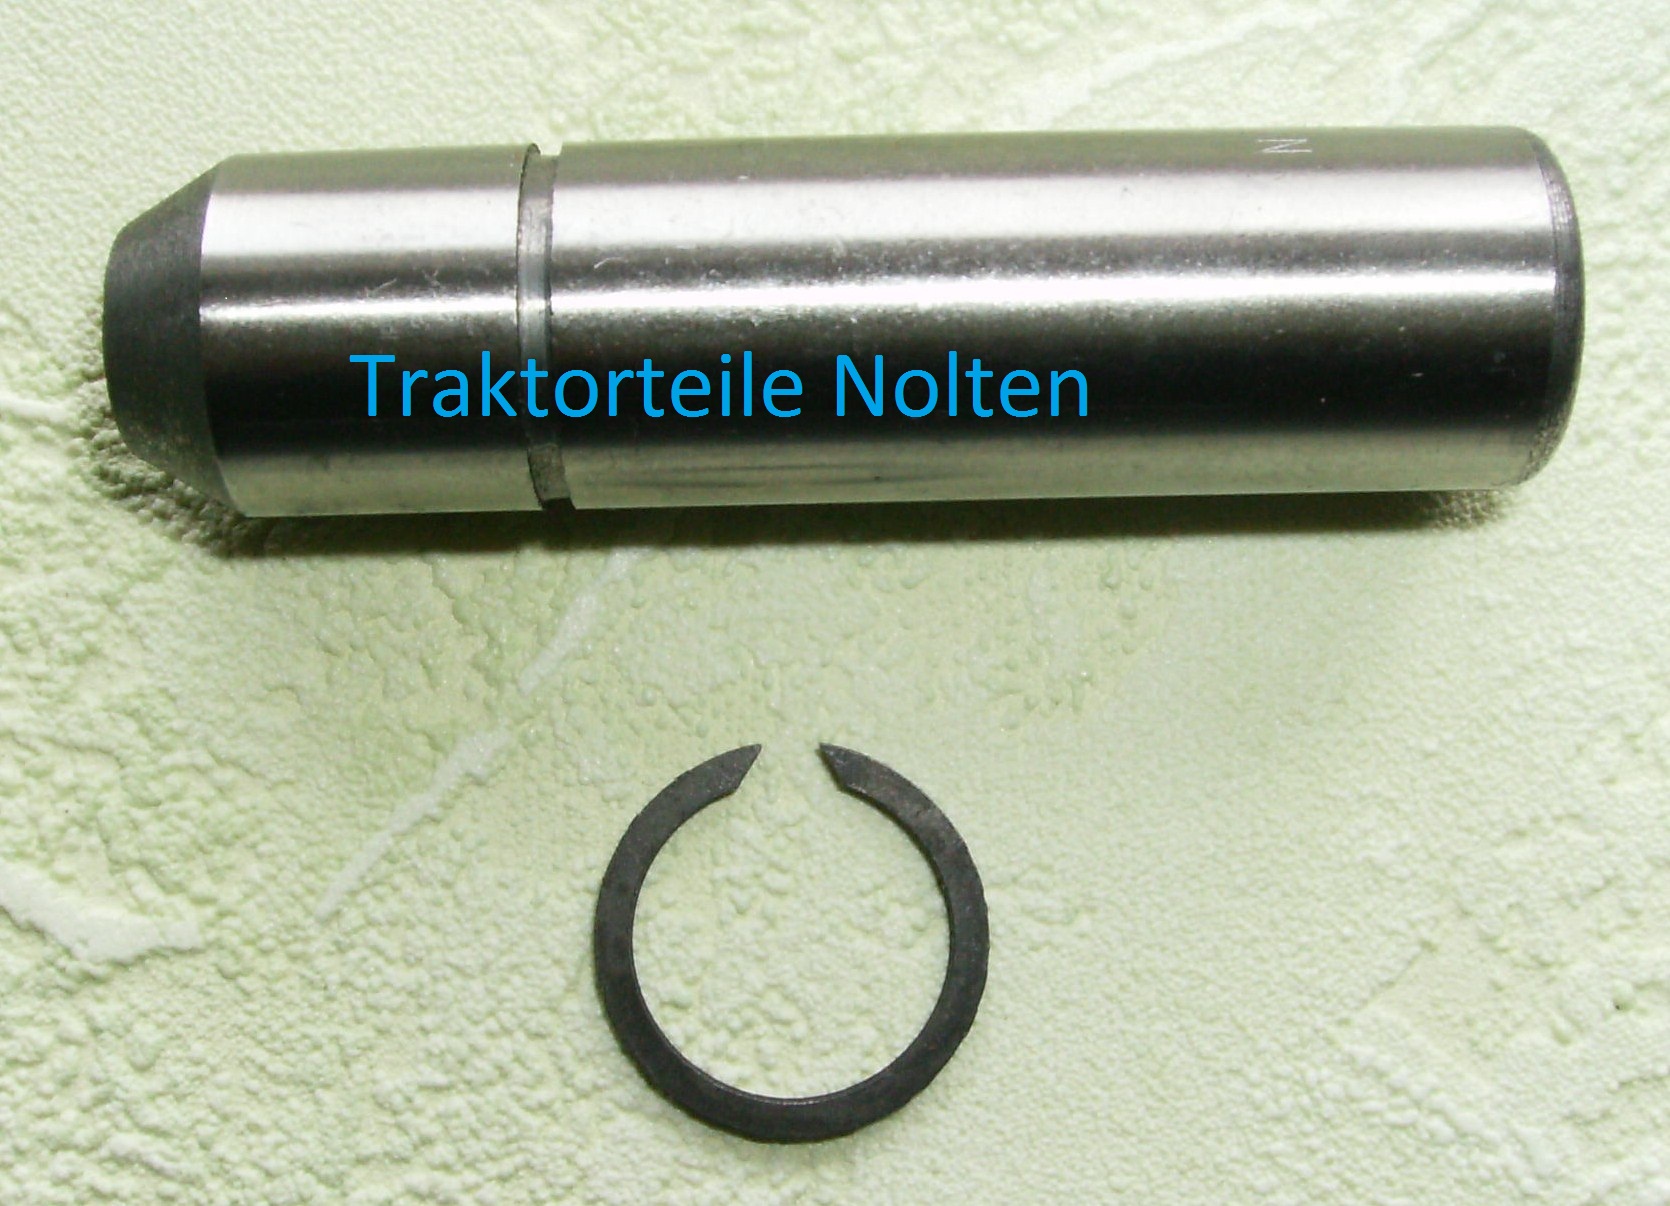 Traktorteile Nolten- Satz Kolben und Zylinder EDK als Ersatz Ø95 mm, 120 mm  Hub